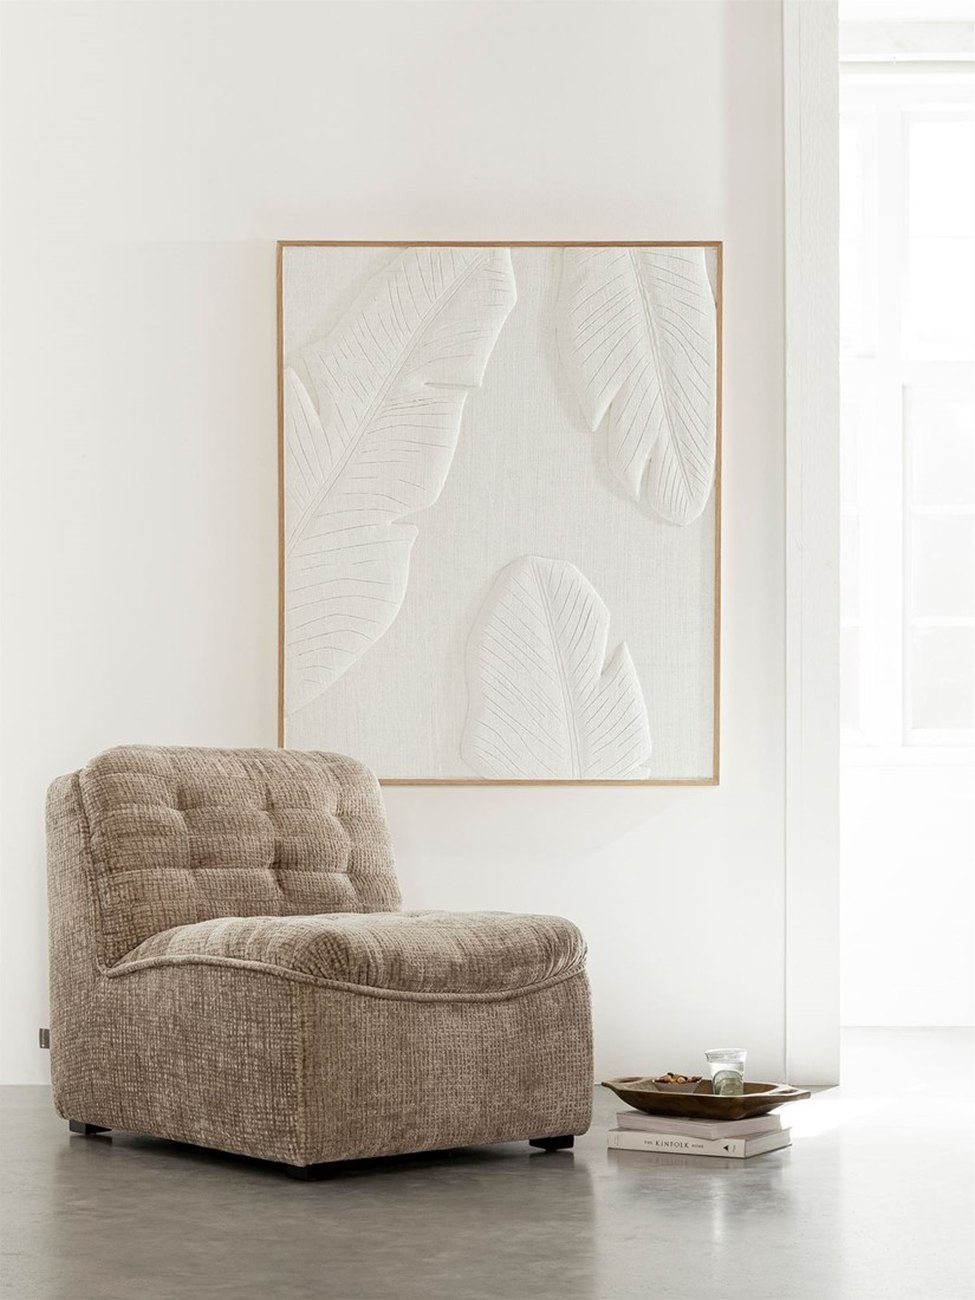 Das Wandpaneel Banana Leaf überzeugt mit seinem modernen Design. Gefertigt wurde es aus Jute, welches einen weißen Farbton besitzt. Das Wandpaneel besitzt eine Größe von 127x102 cm.